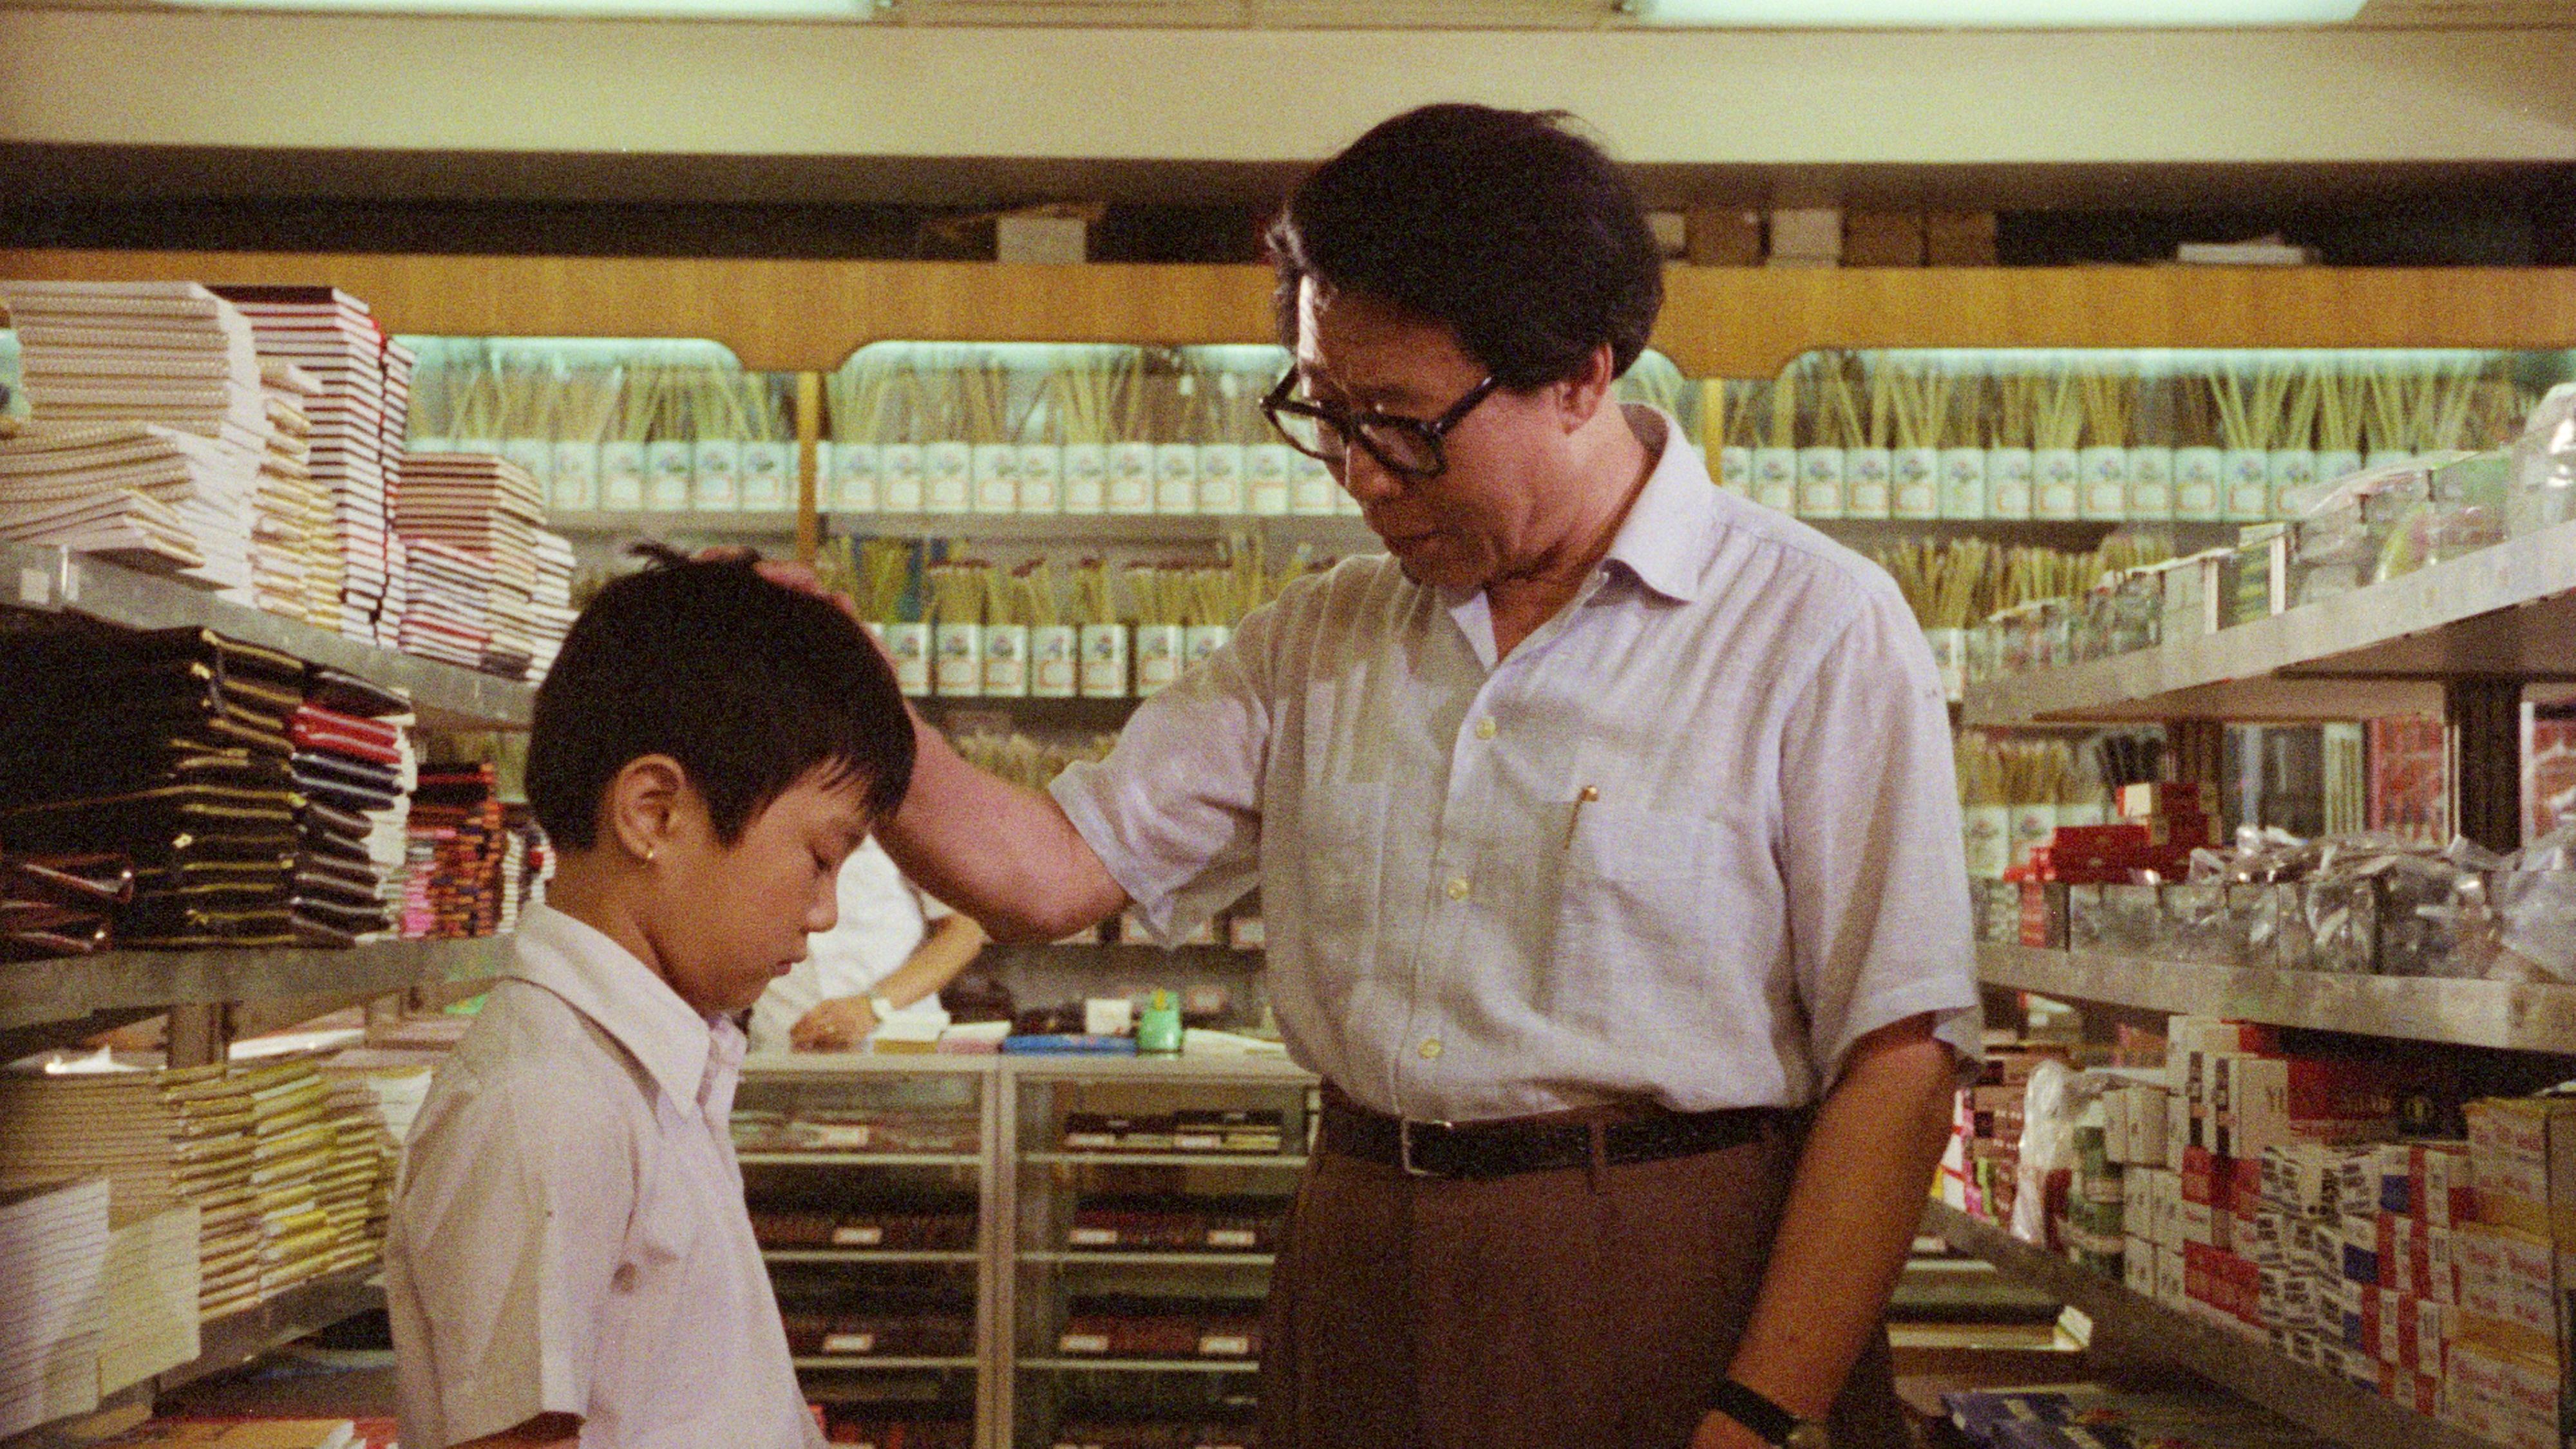 康樂及文化事務署香港電影資料館六月二十三日至九月二十二日期間舉行放映節目「影以載道──銀都作品回顧」，選映十六部銀都經典作品。放映節目為首屆「中華文化節」節目之一。圖示《父子情》（1981）劇照。（鳴謝銀都機構有限公司授權使用）